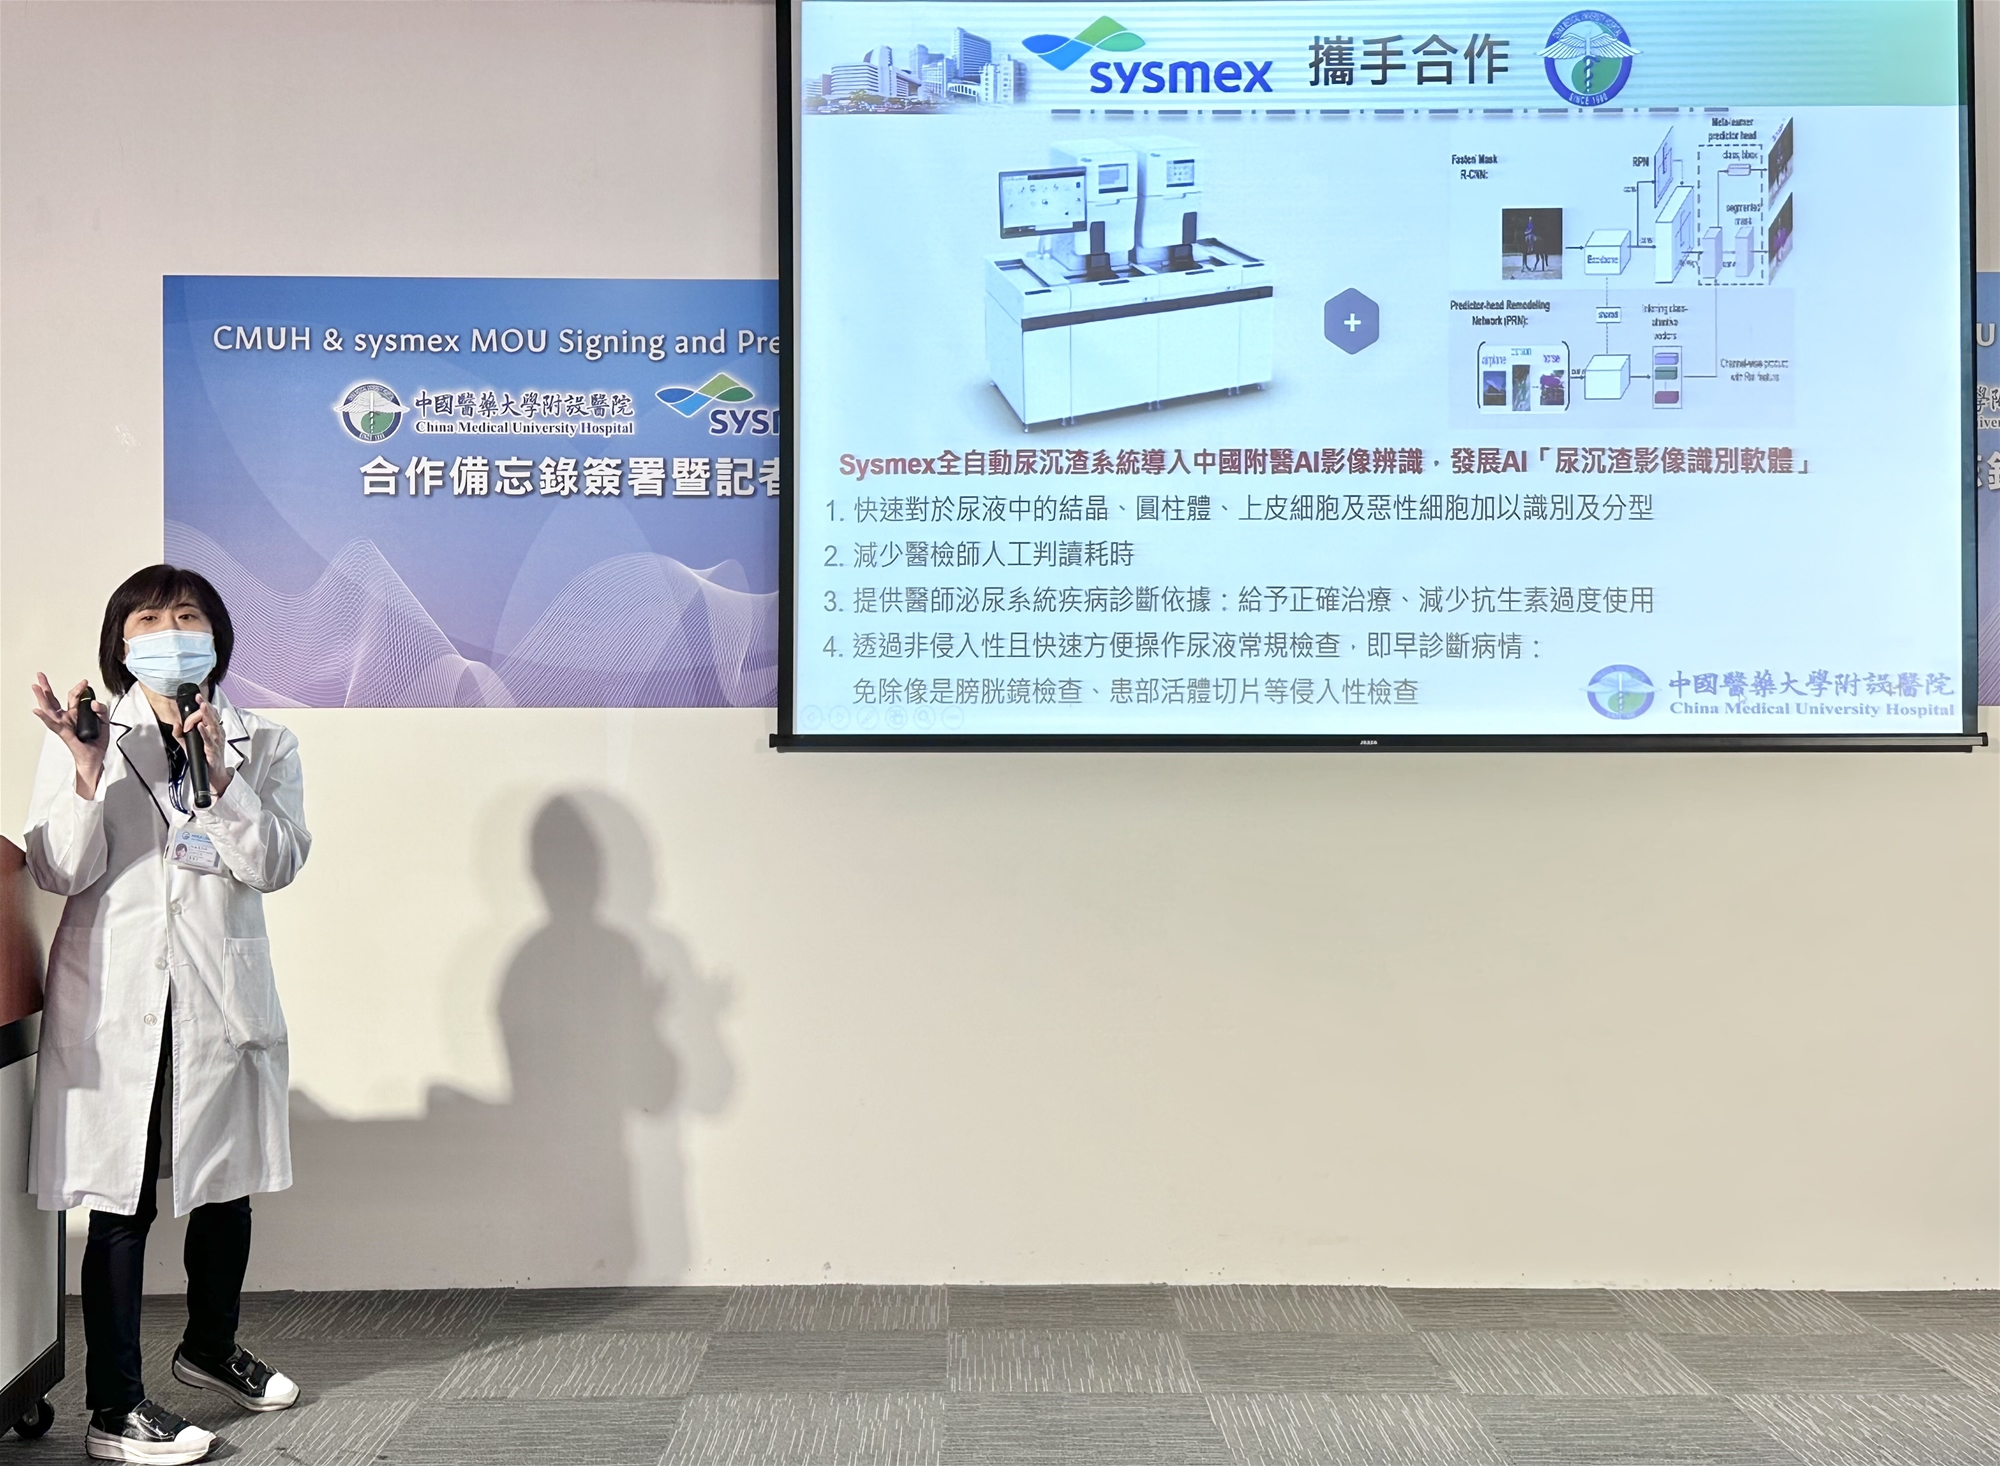 檢驗醫學中心蕭瓊子主任說明，日本sysmex全自動尿沉渣系統導入中國附醫AI影像辨識，發展AI「尿沉渣影像識別軟體」能快速對於尿液中的結晶、圓柱體、上皮細胞及惡性細胞加以識別及分型